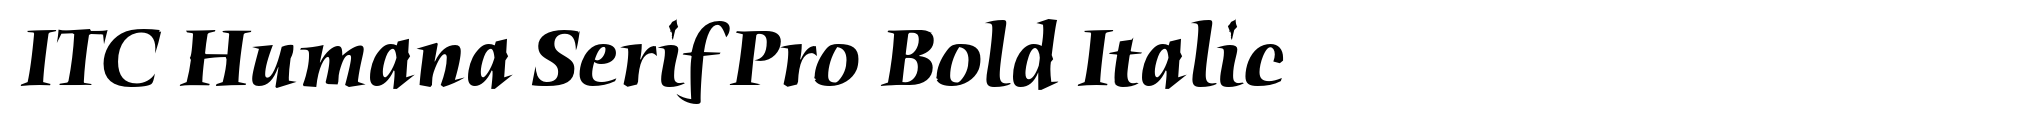 ITC Humana Serif Pro Bold Italic image